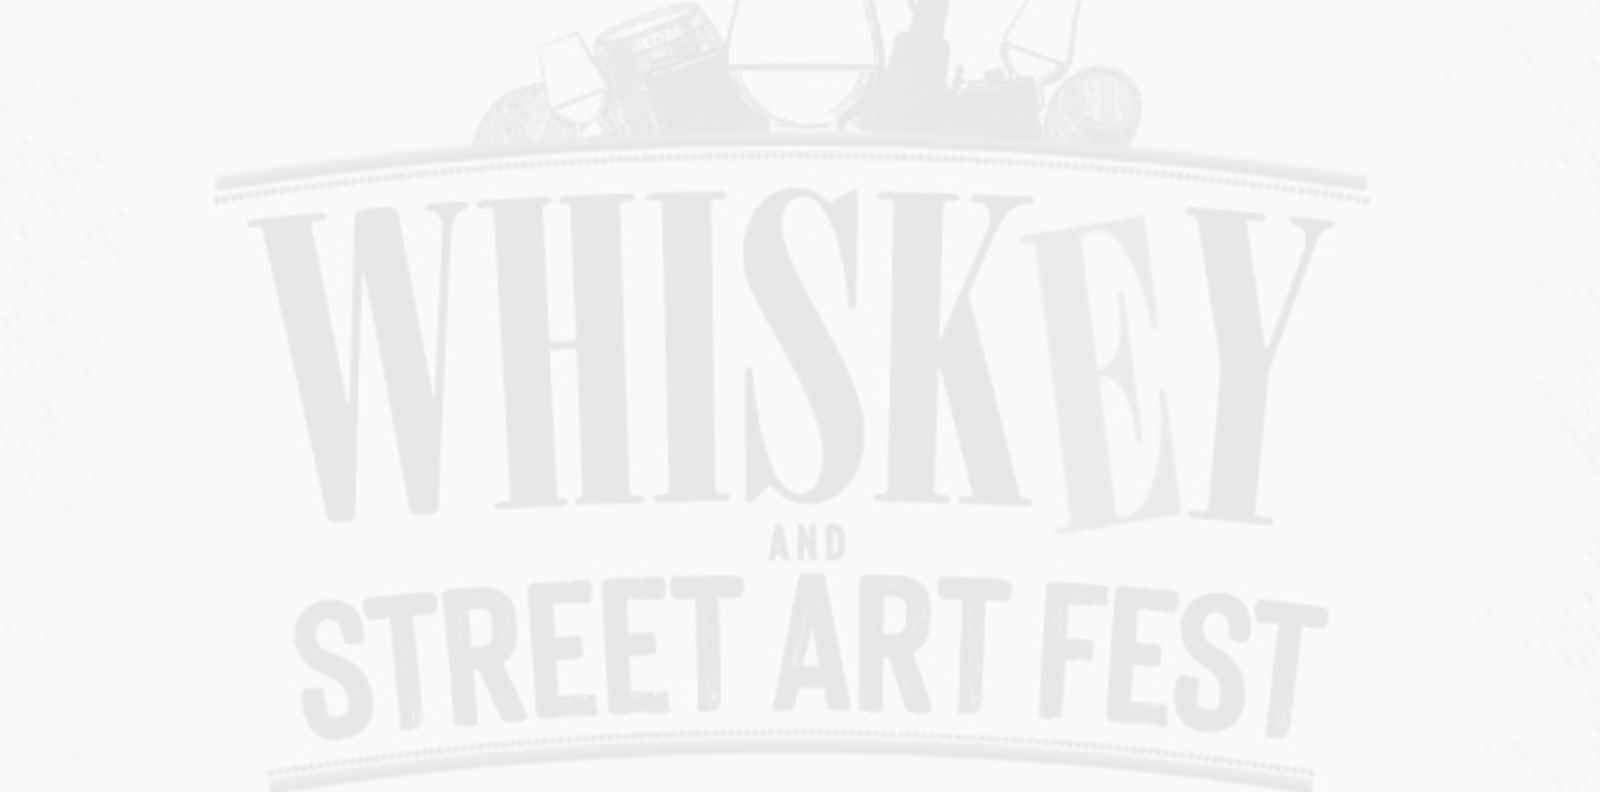 Whiskey &amp; Street Art Fest се завръща в Капана